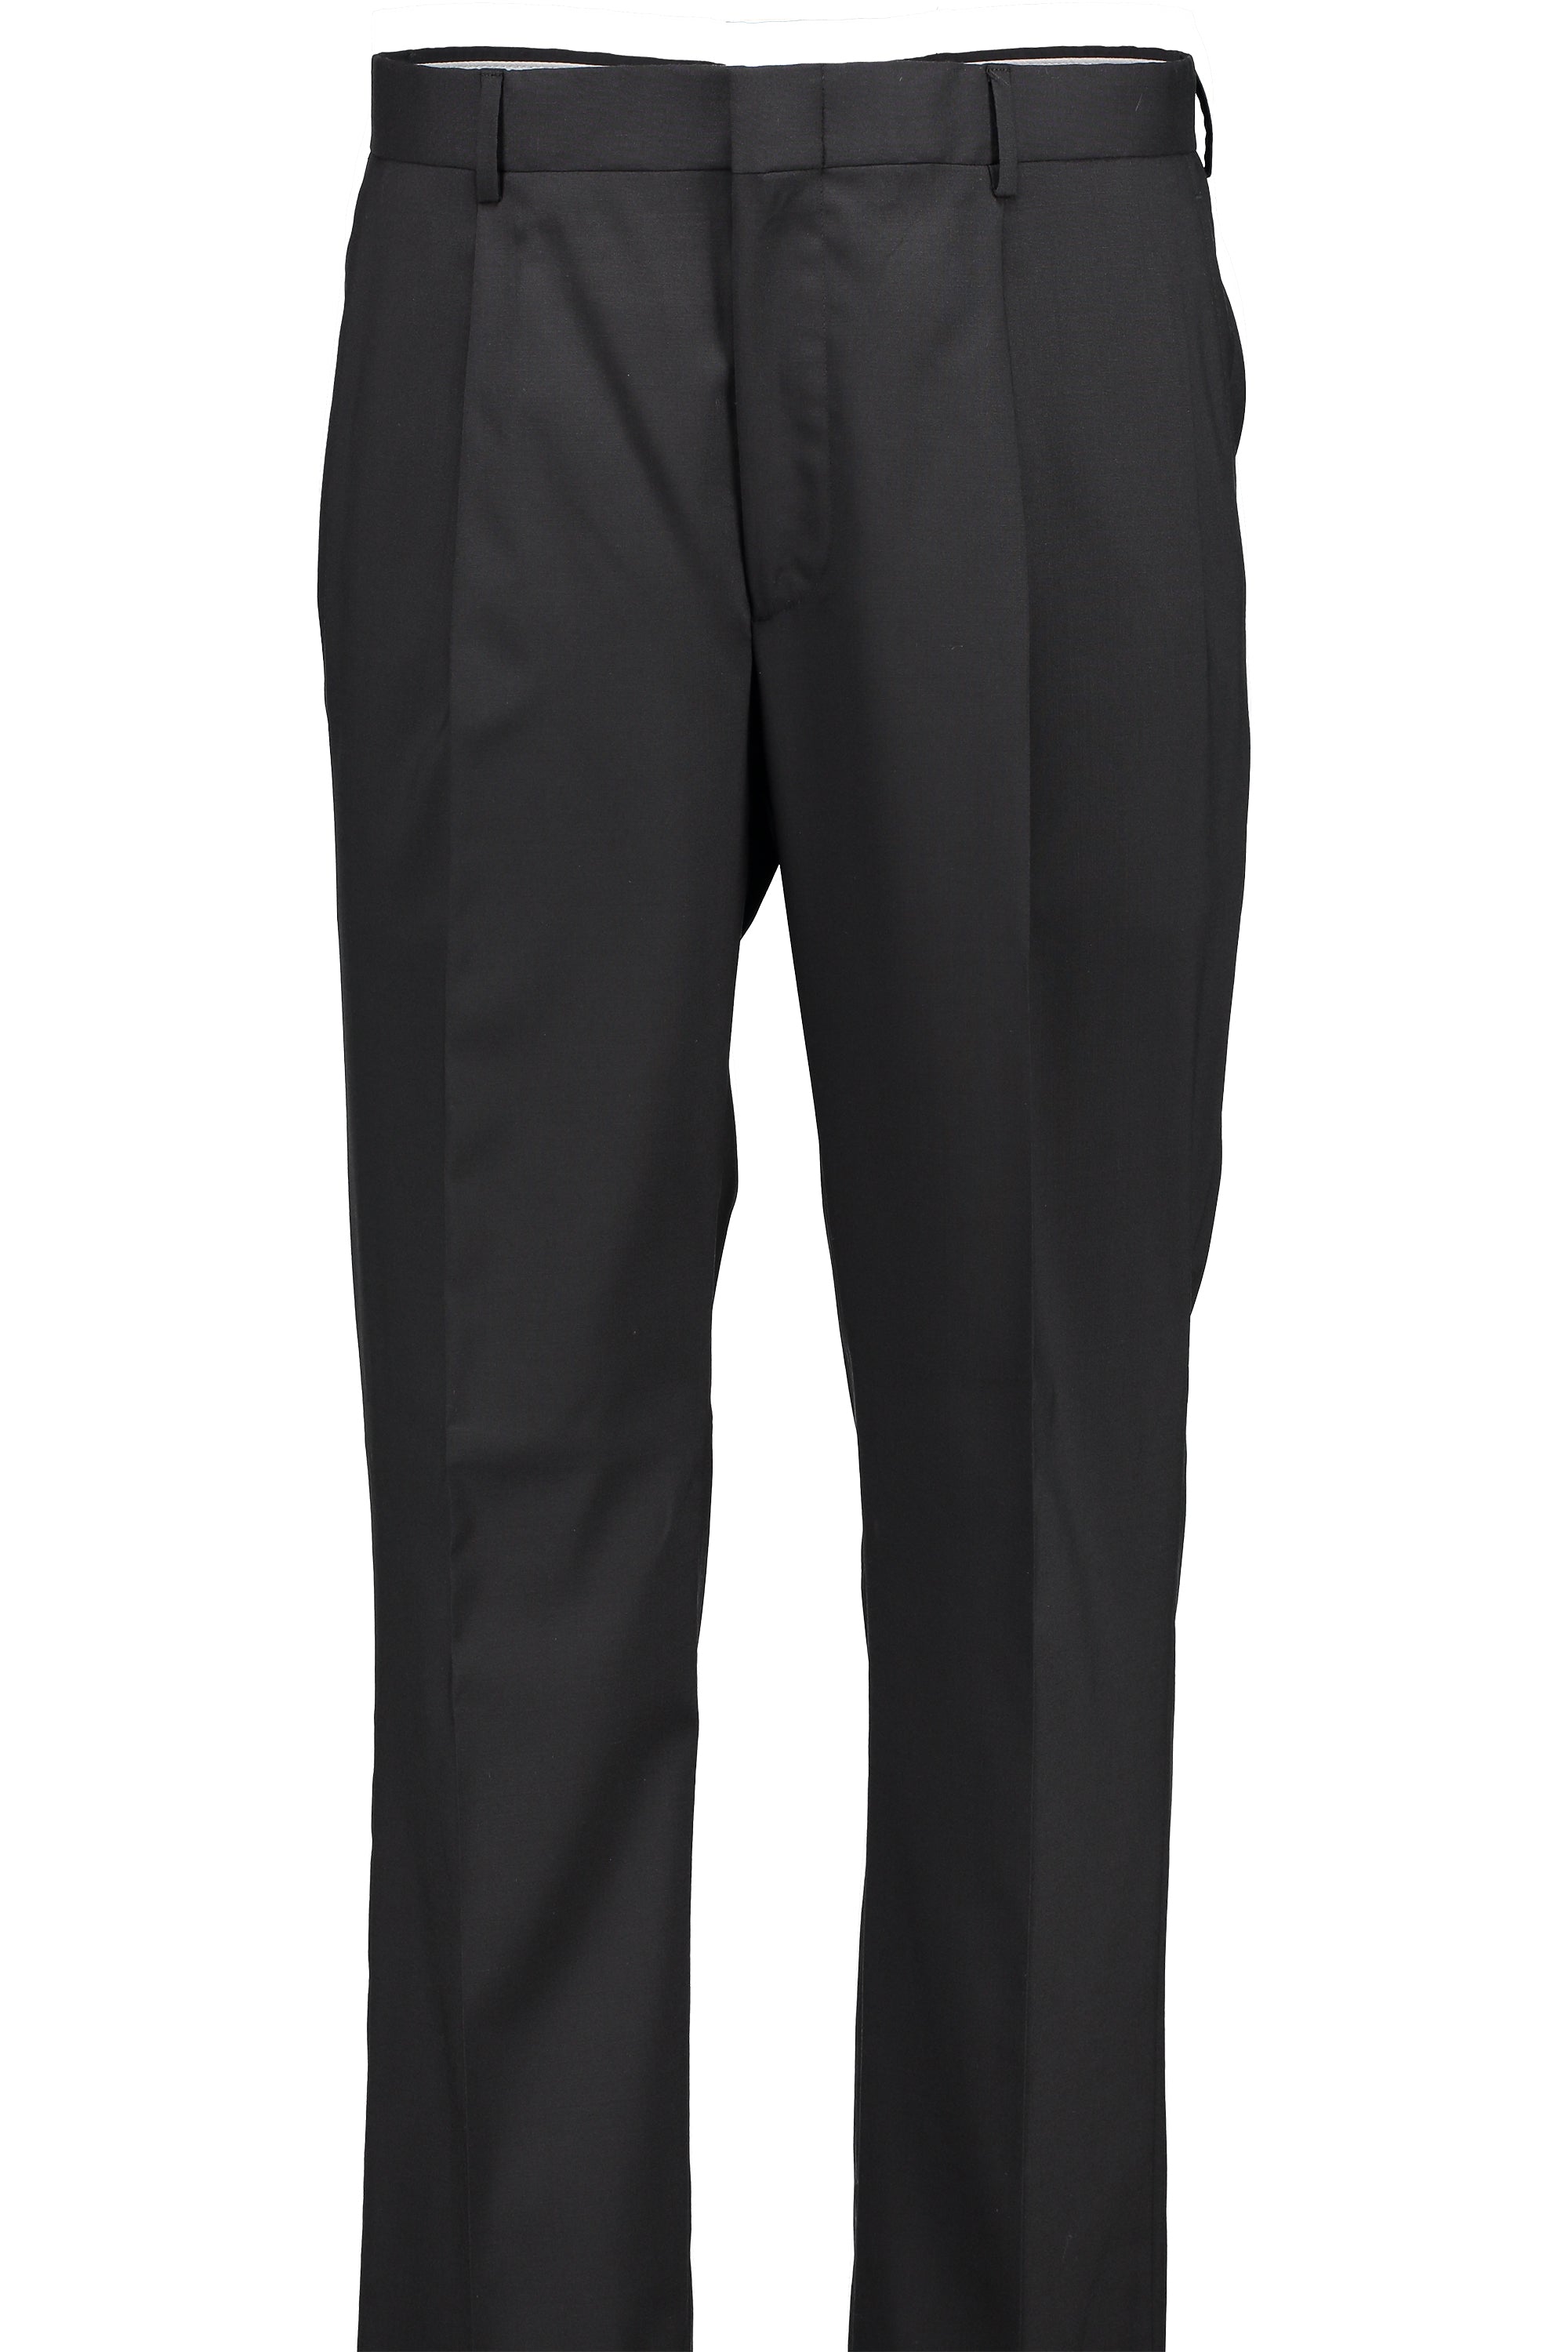 Men's Suit Separates Pleated Pant Classic Cut - BLACK 98/2 WOOL/LYCRA SUPER100